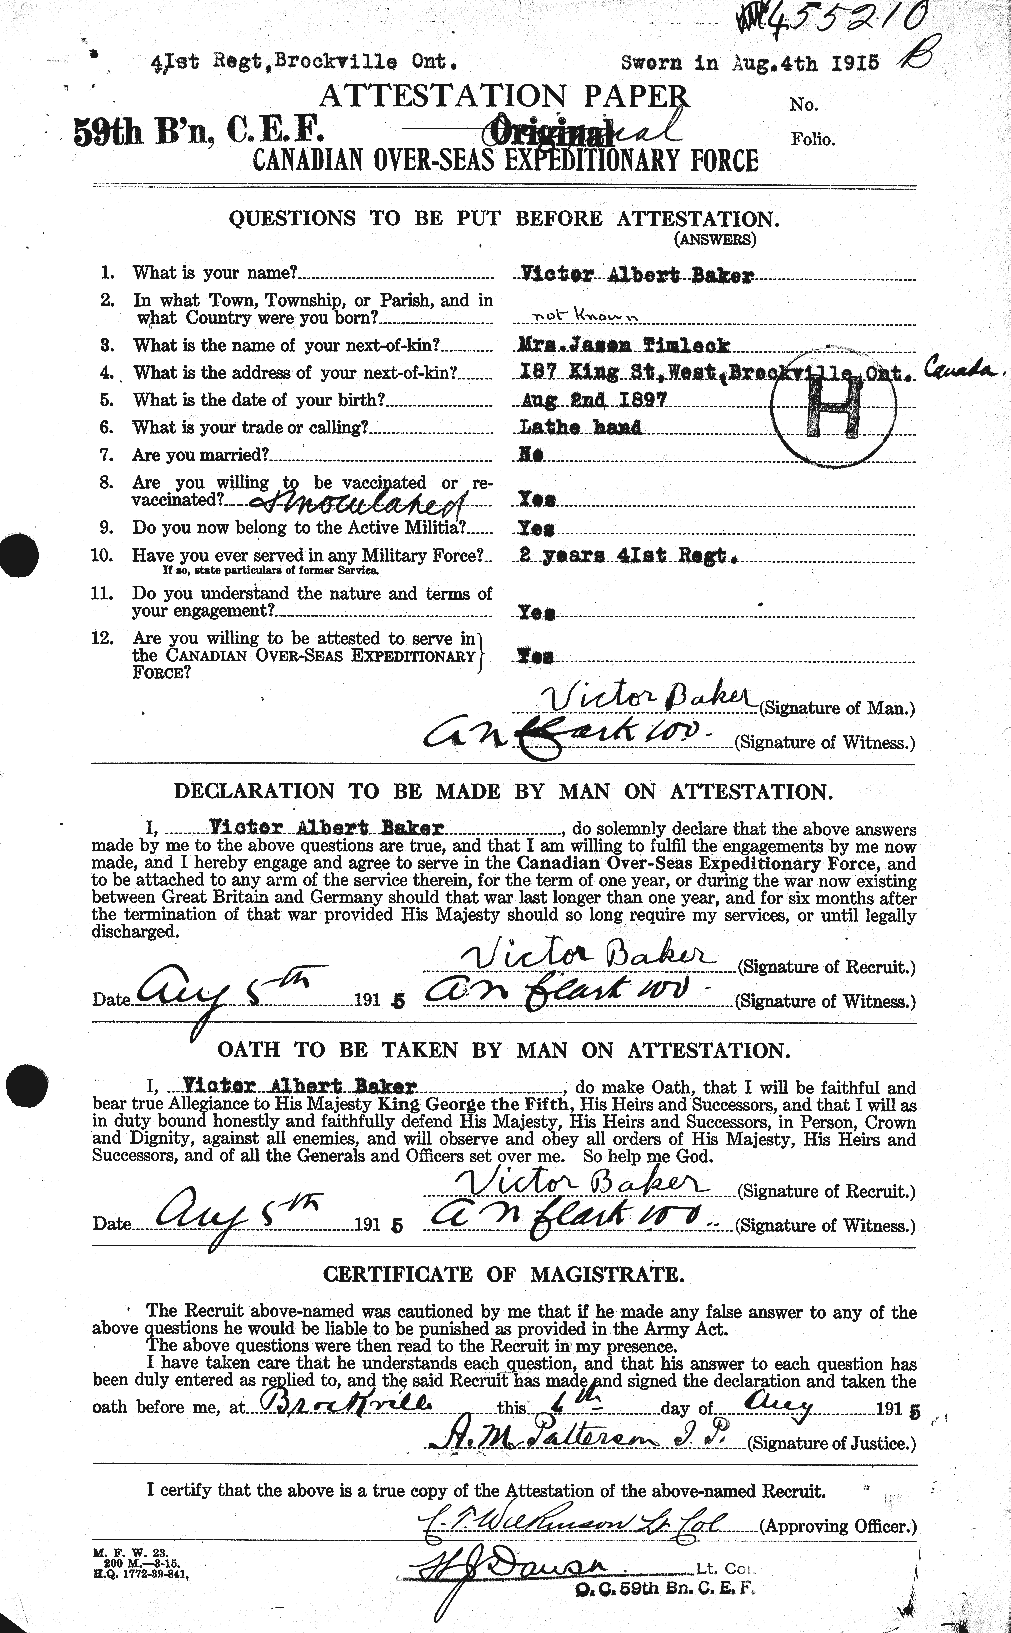 Dossiers du Personnel de la Première Guerre mondiale - CEC 221433a